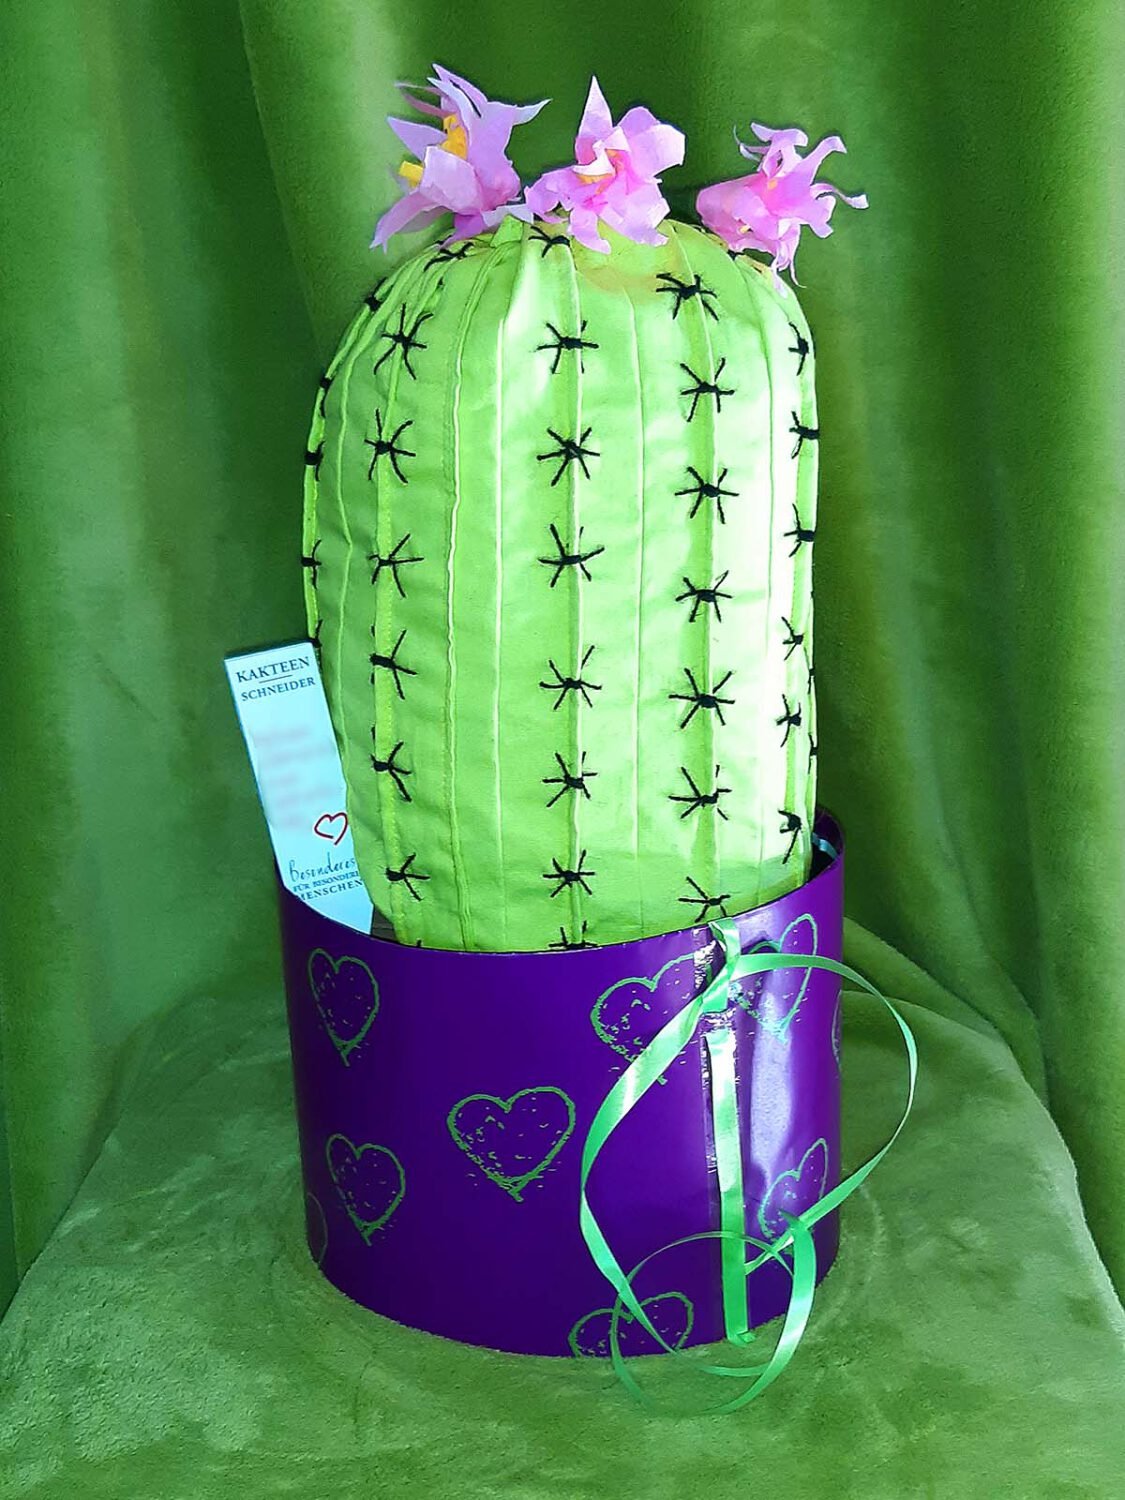 Kaktuskissen Geschenkversion Cereus mit Blüten